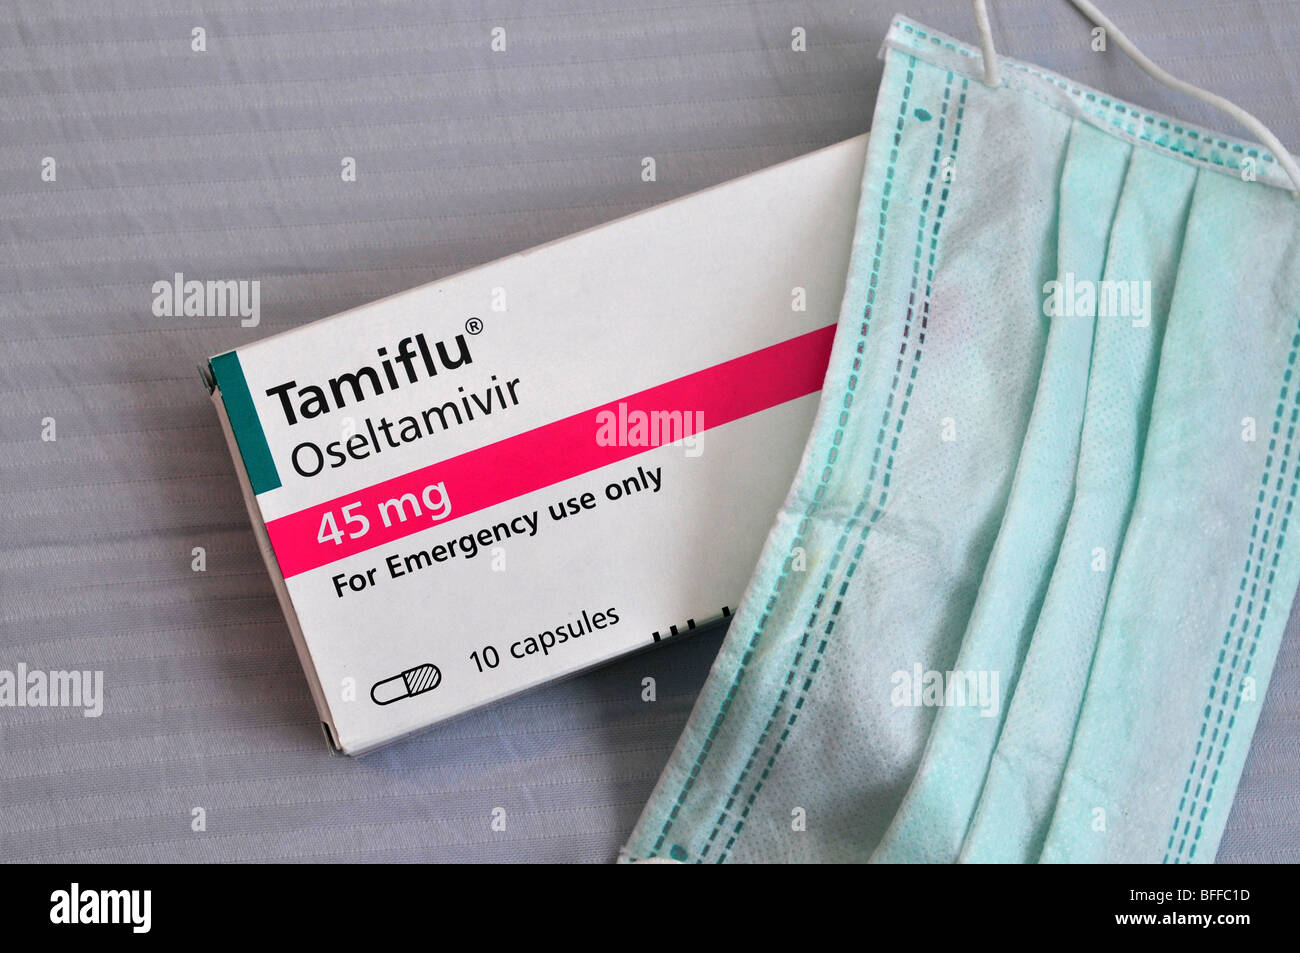 Eine medizinische Gesichtsmaske und eine Packung von Tamiflu Tabletten gegen Schweinegrippe, 30. Oktober 2009. Stockfoto